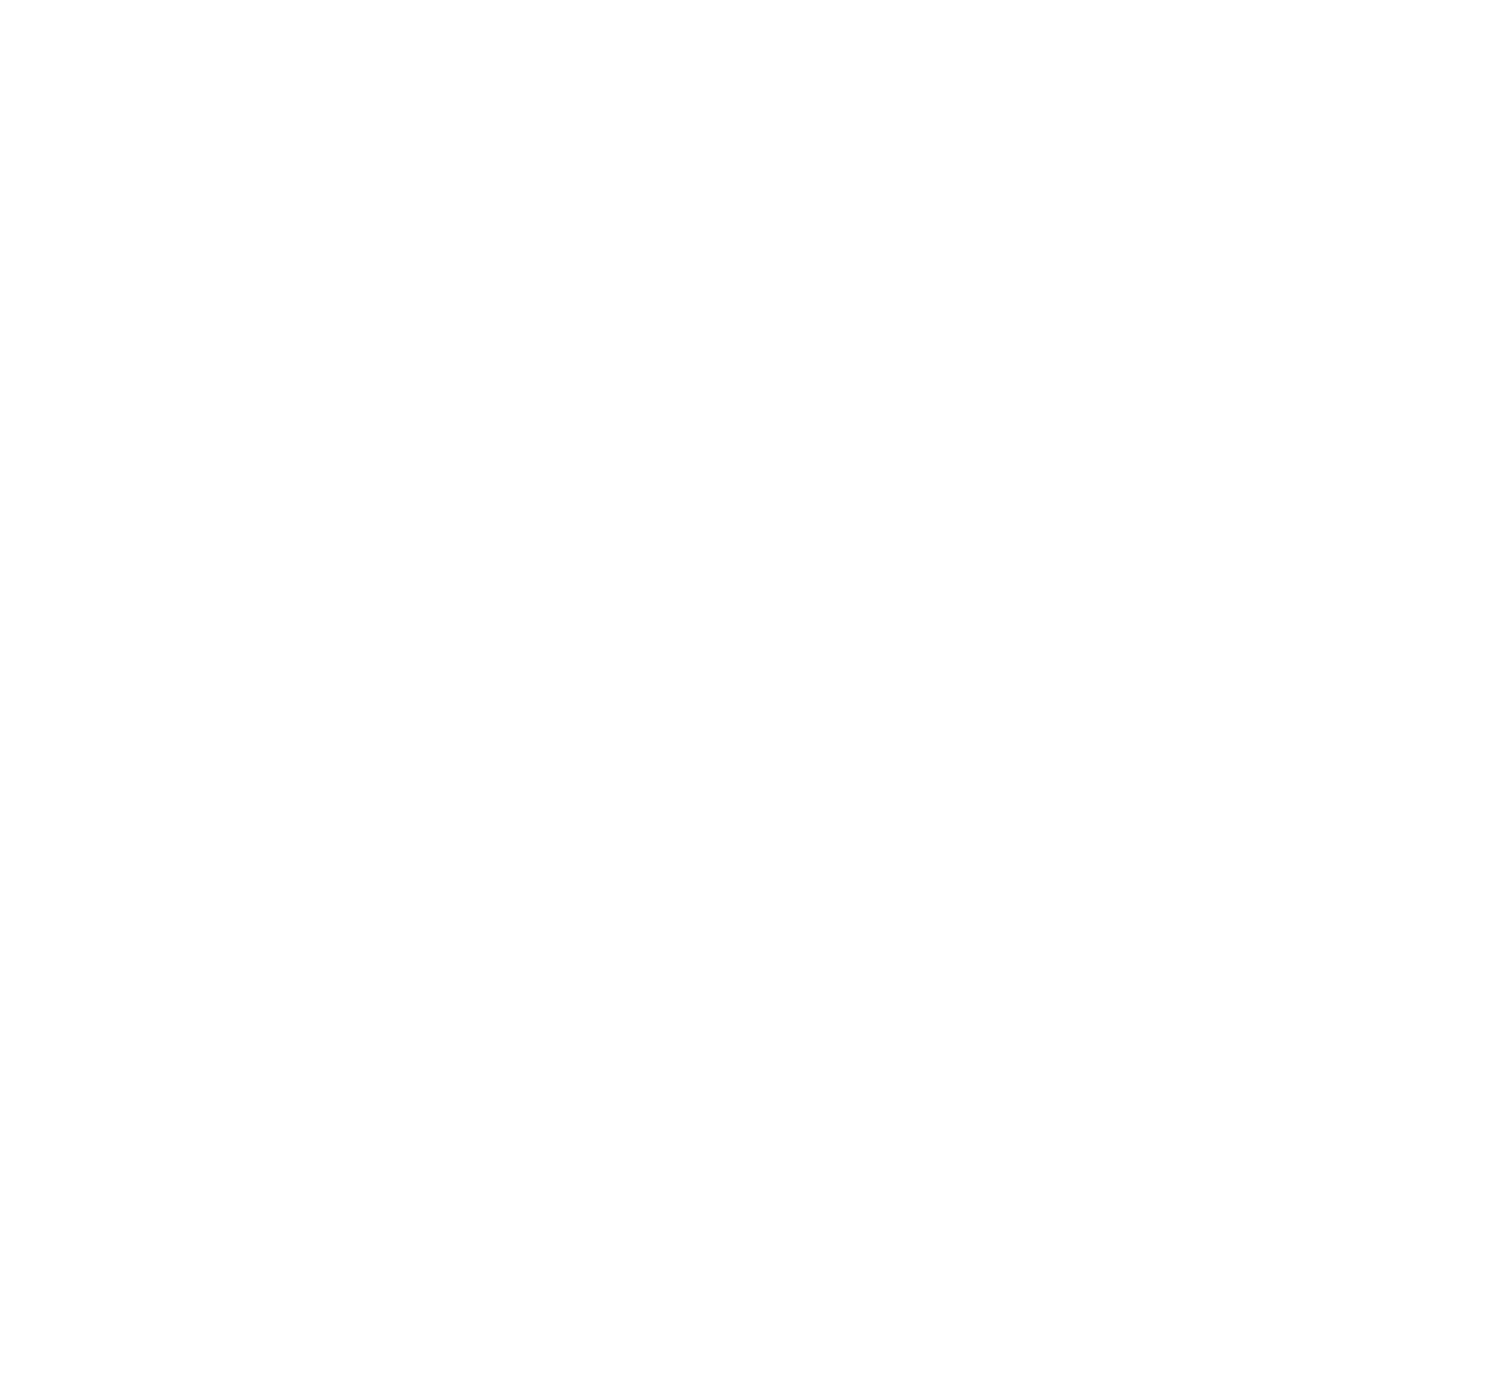 Legacy Detailing